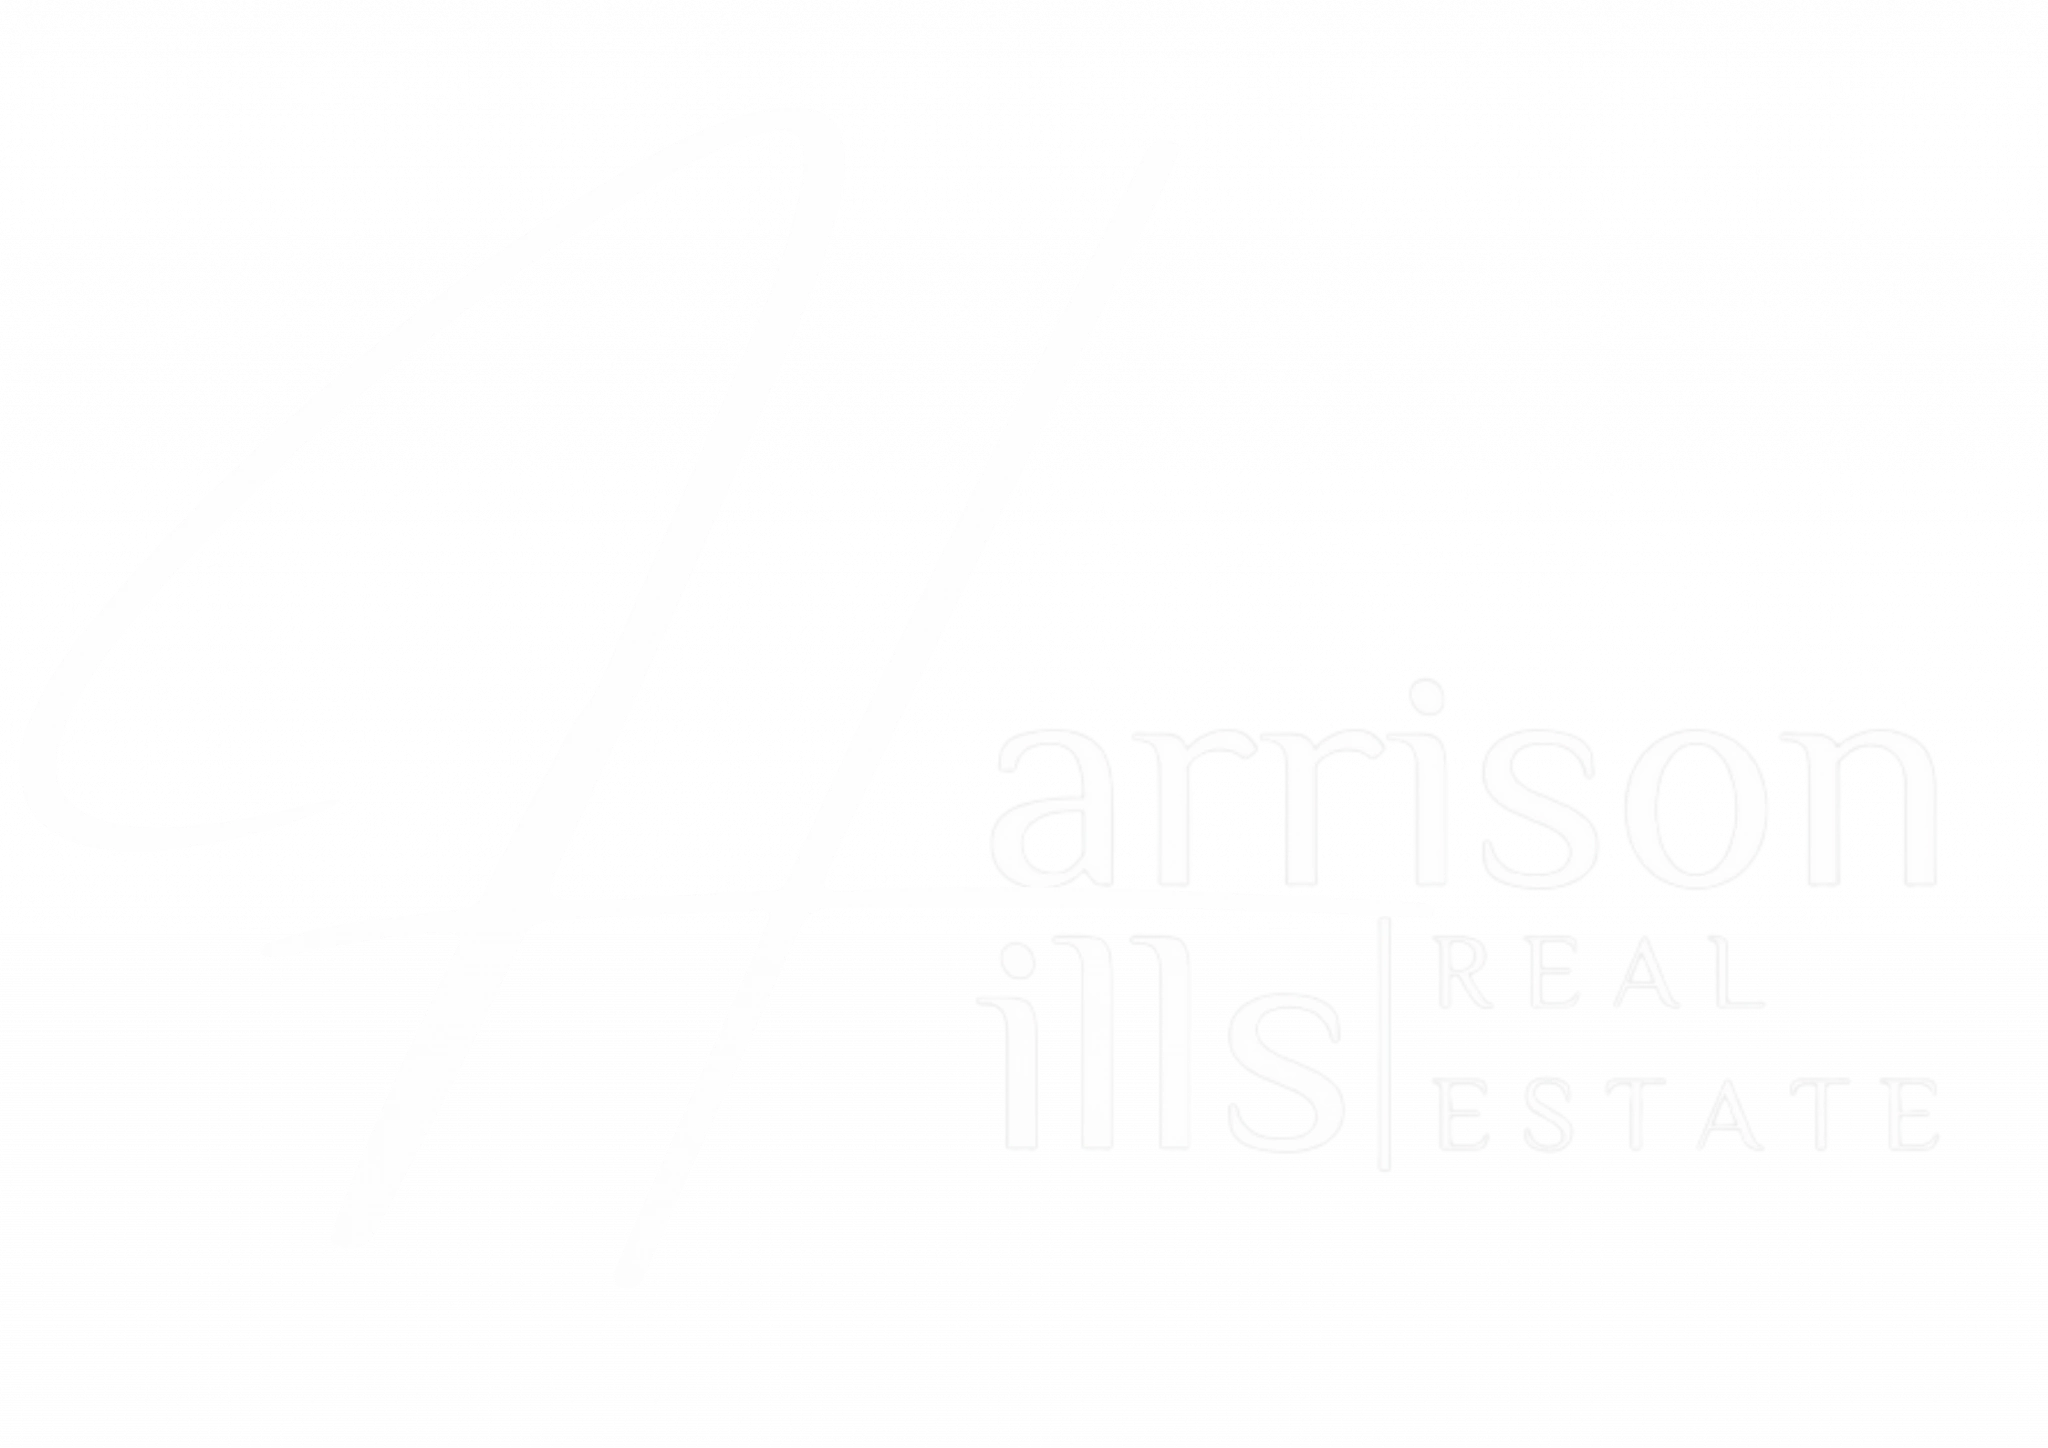 Real Estate Agency Harrison Hills Real Estate